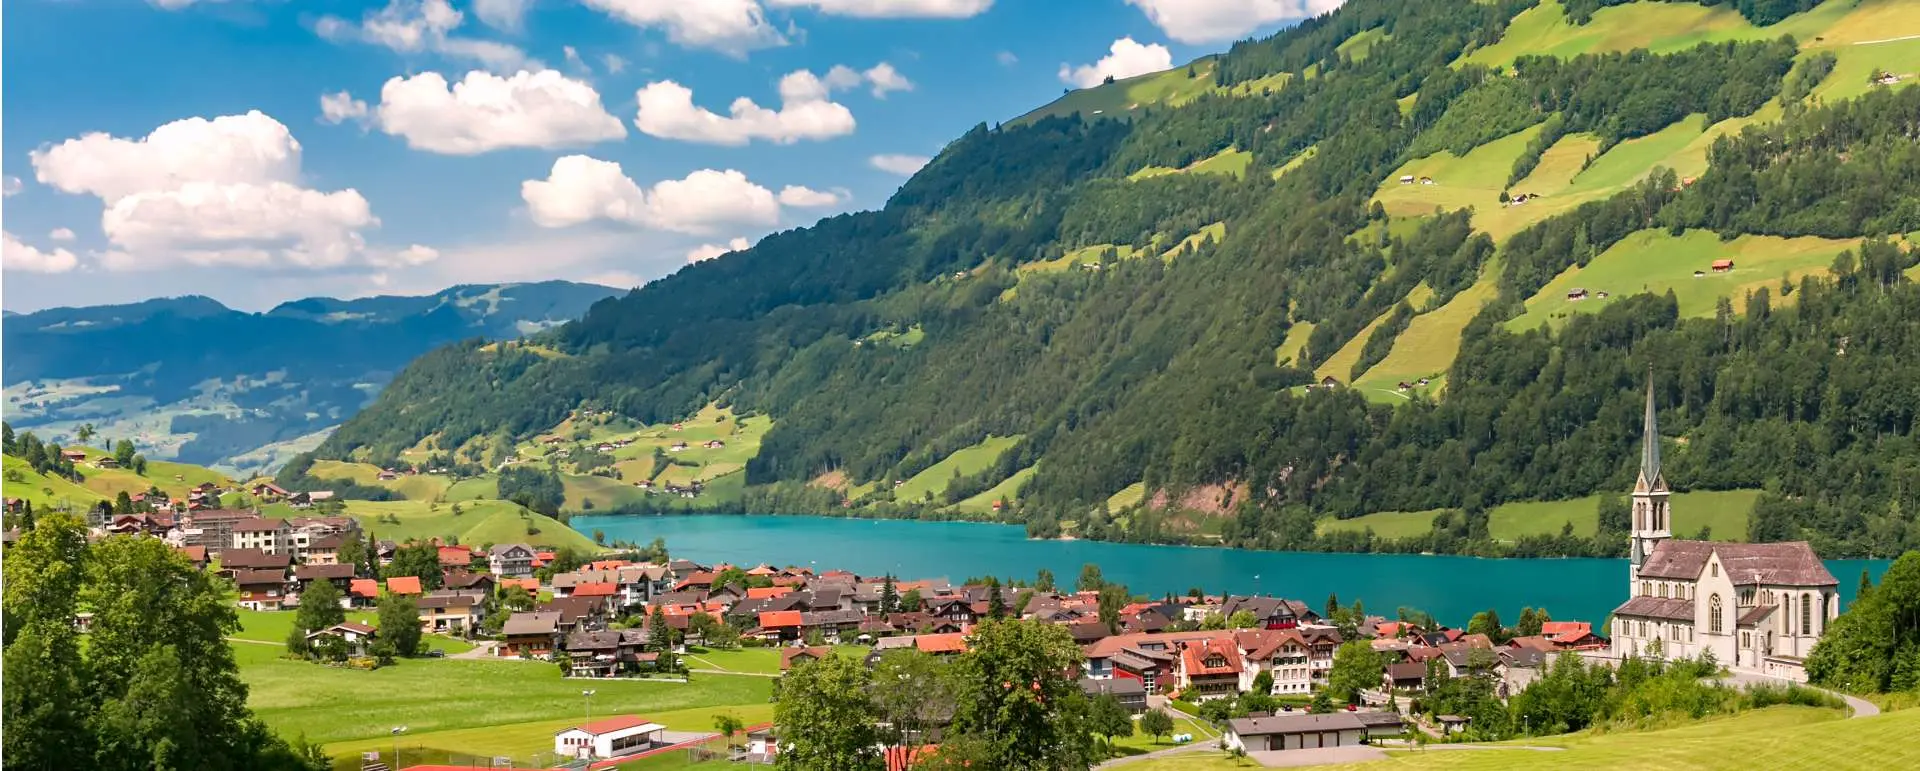 Obwalden - the destination for groups